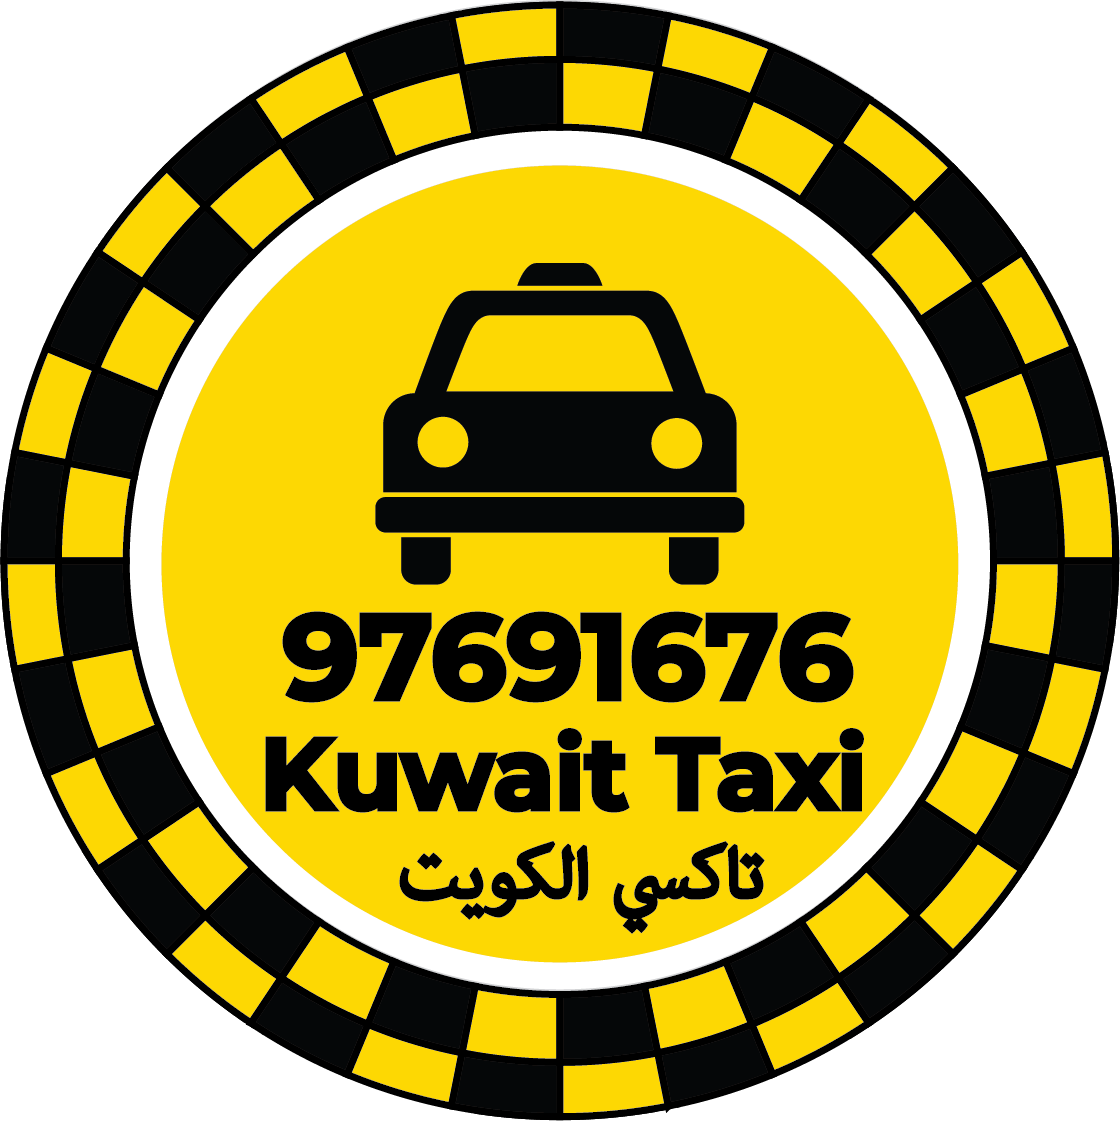 رقم تاكسي الأحمدي - مكتب تاكسي الأحمدي كويت